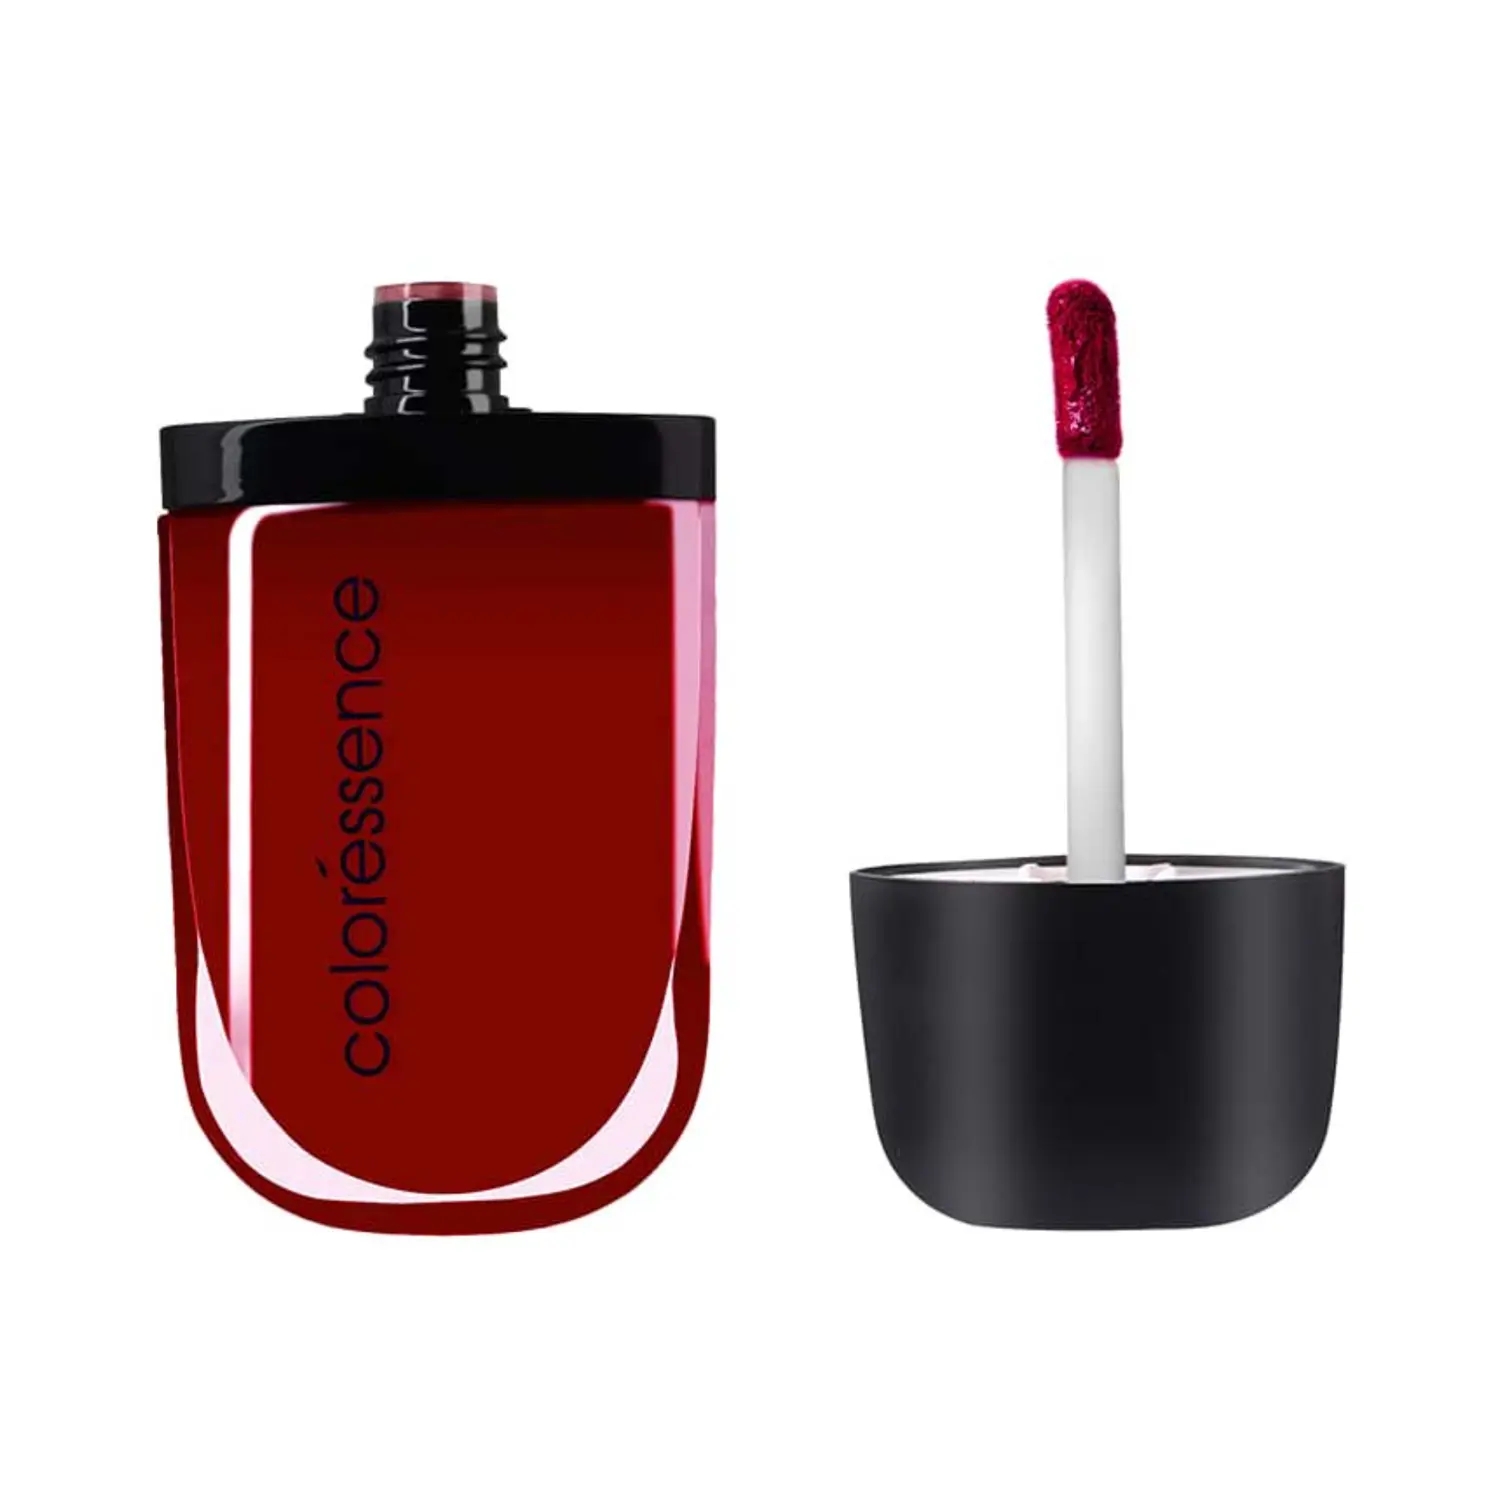 Coloressence | Coloressence Intense Soft Matte Liquid Lip Color Lipstick - Sugar Plum (8ml)